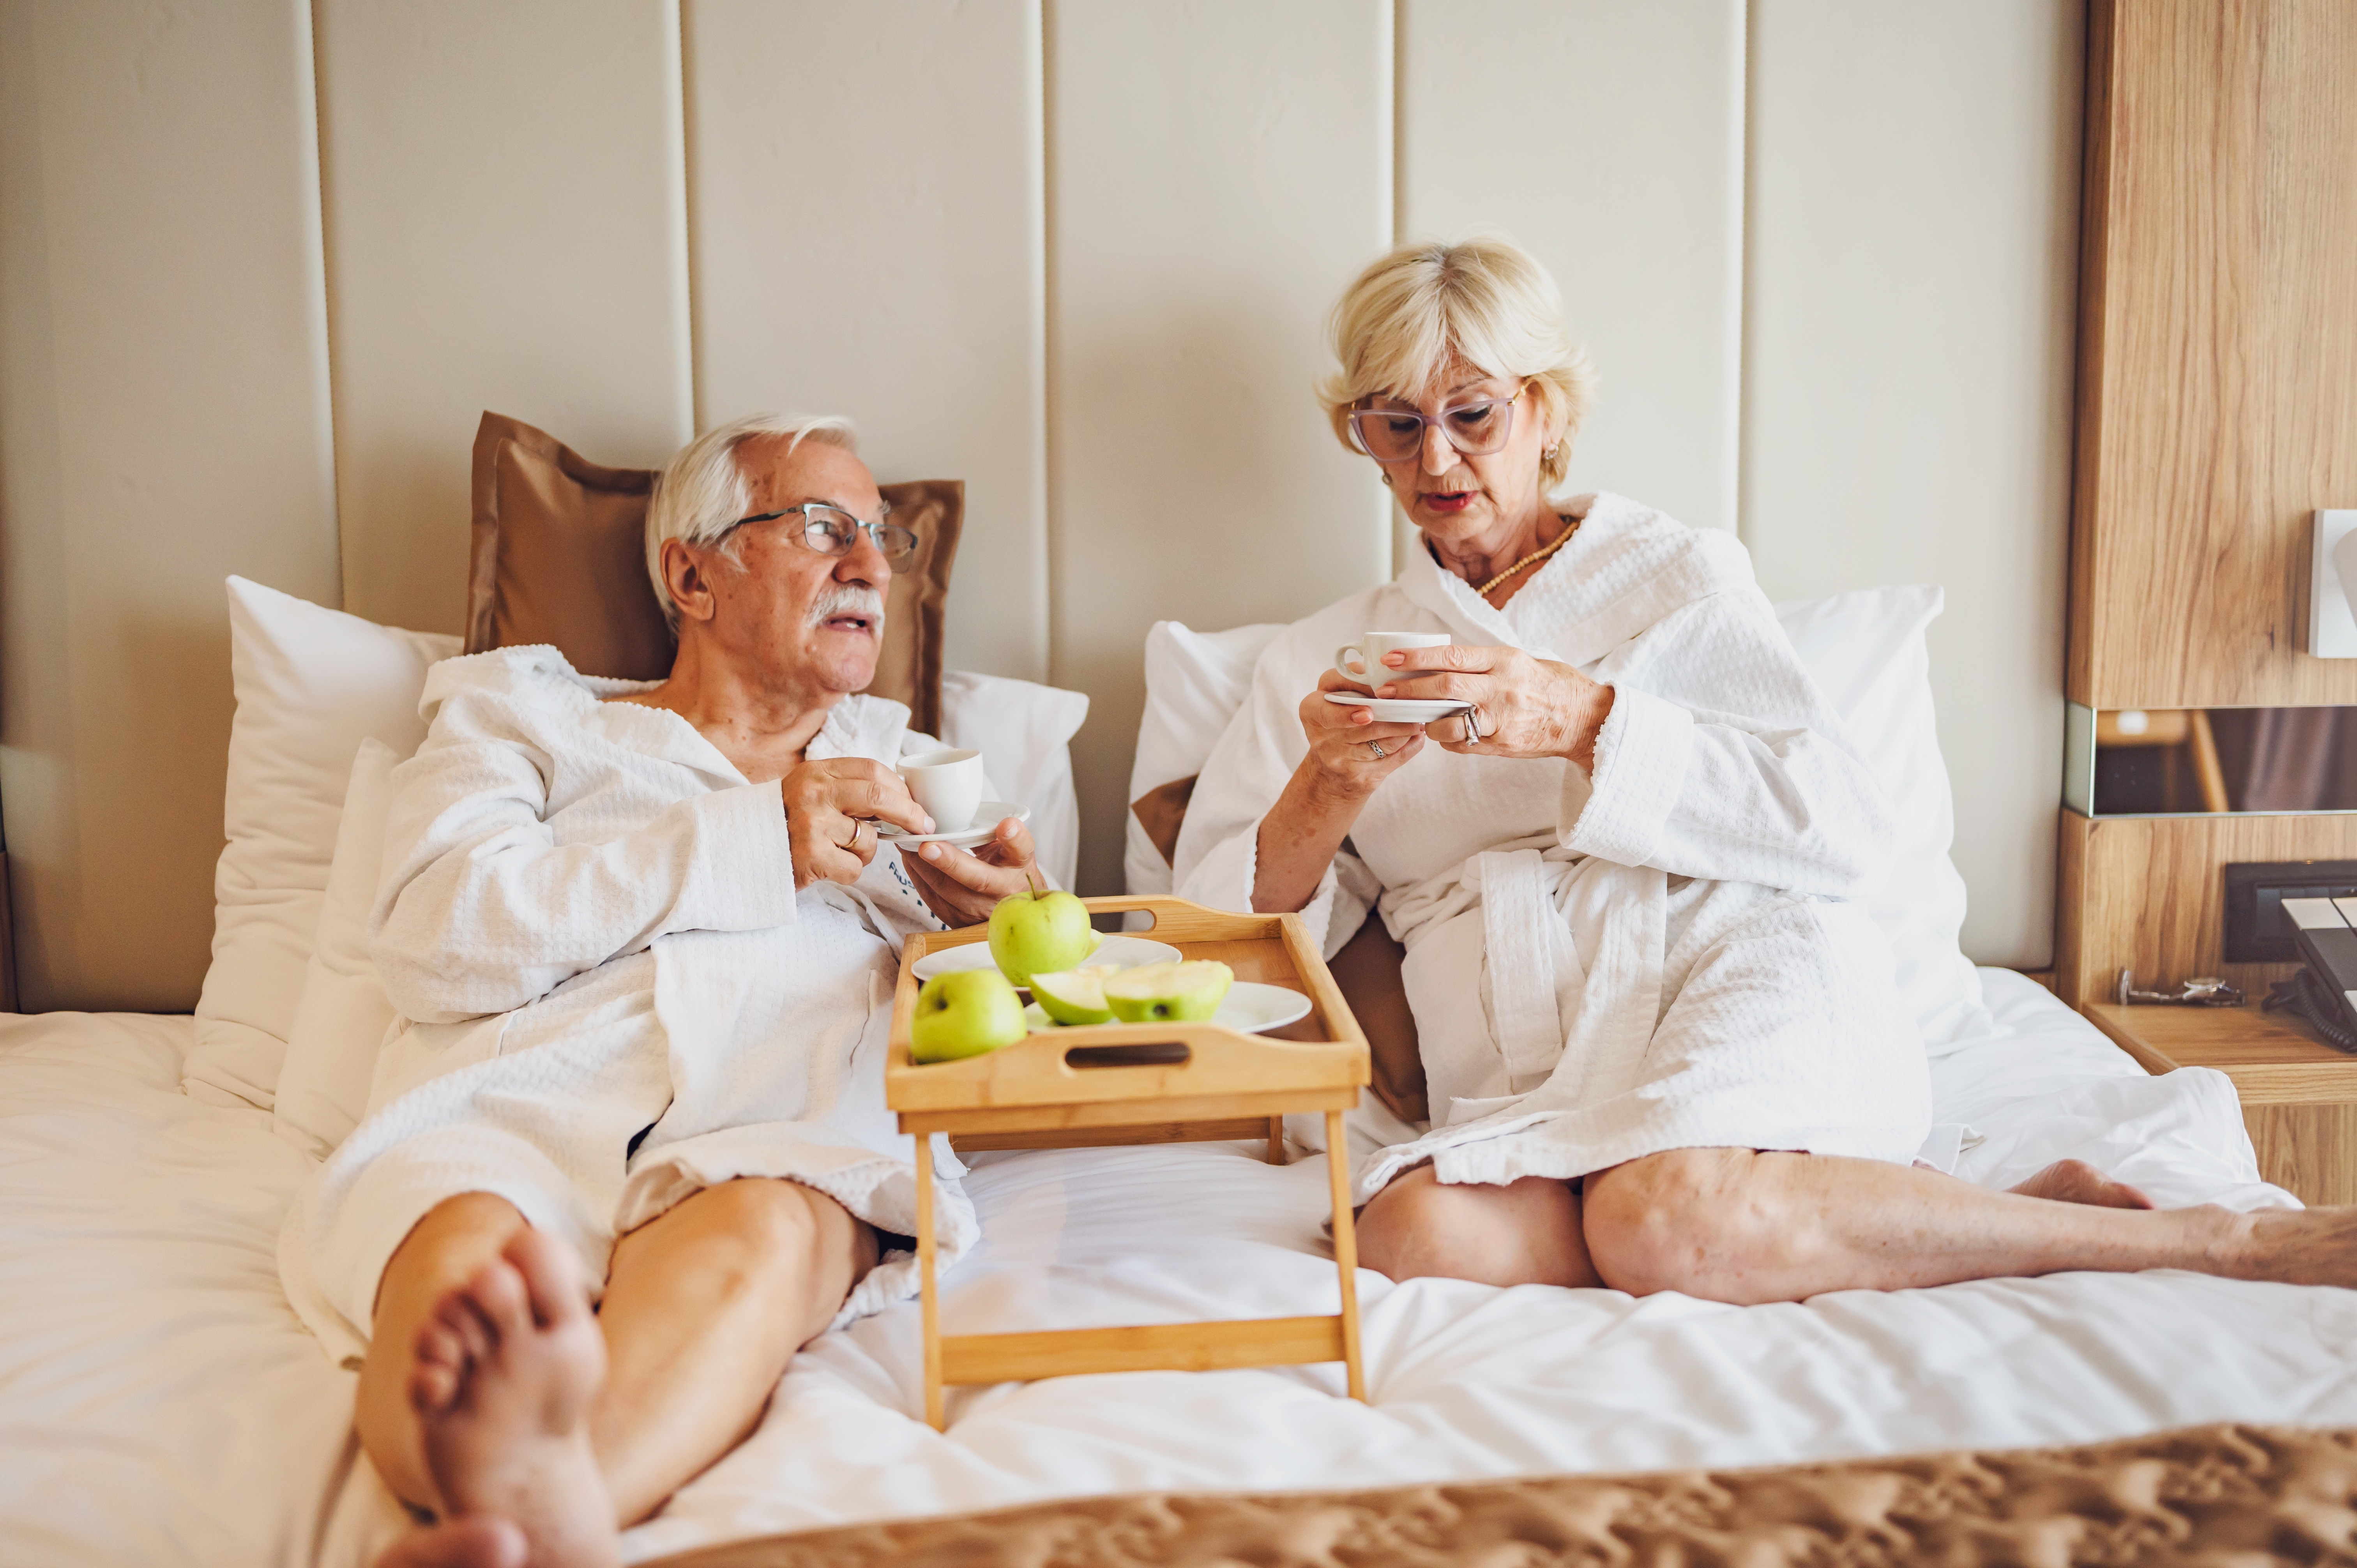 Una pareja de ancianos tomando café en una habitación de hotel | Fuente: Shutterstock